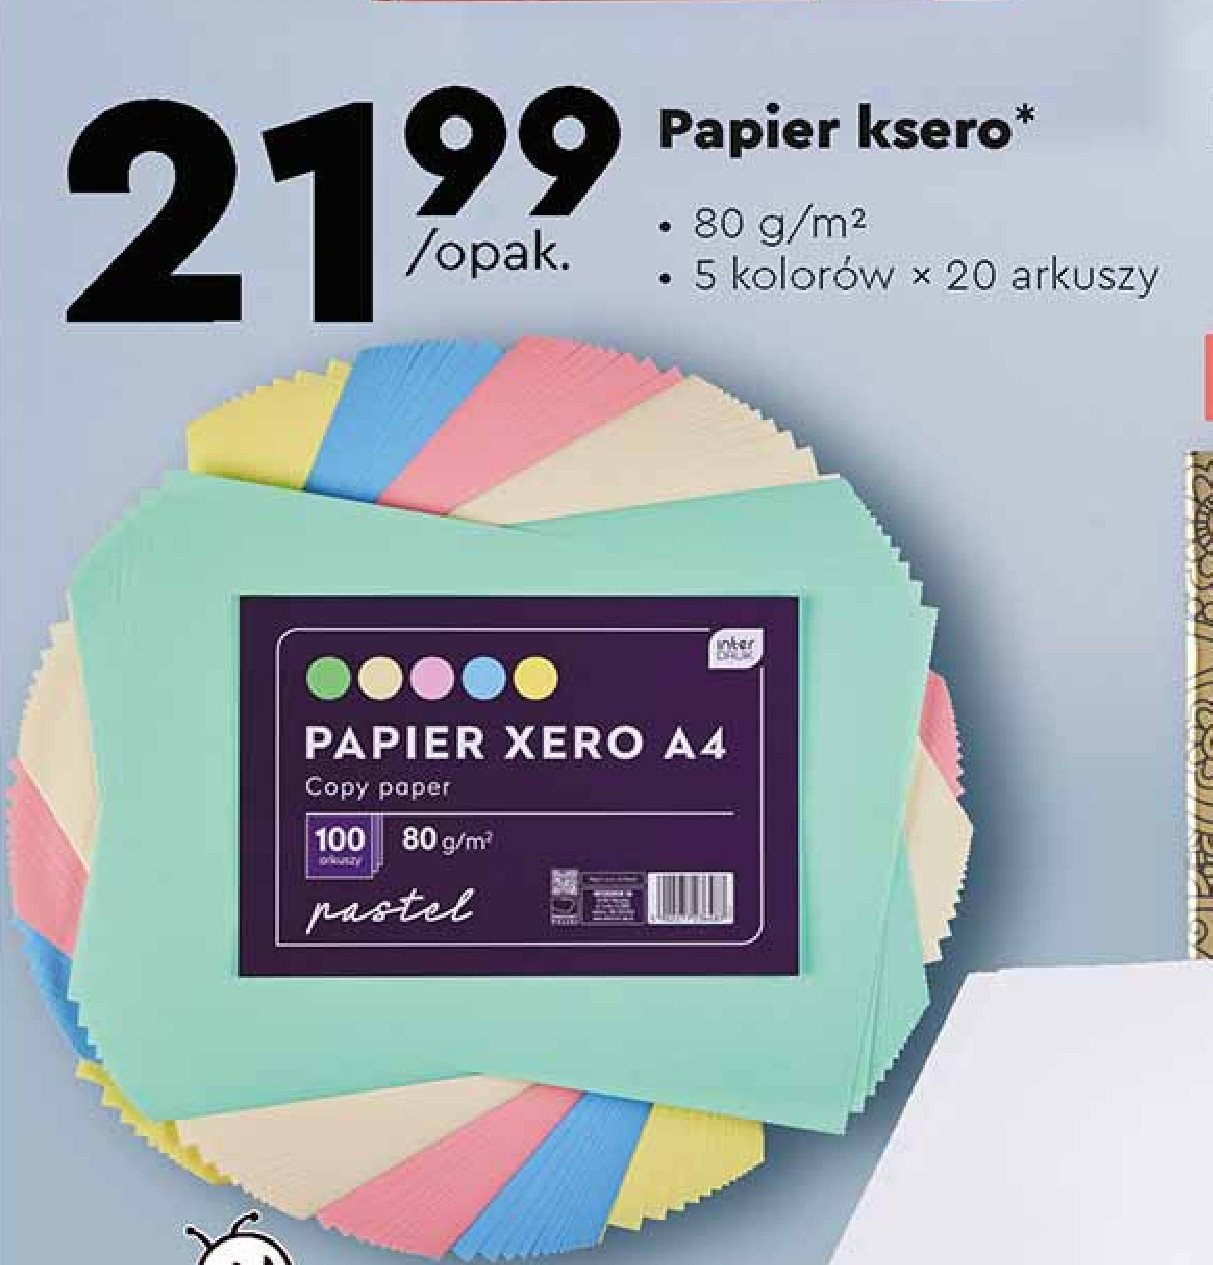 Papier ksero kolorowy a4 Interdruk promocja